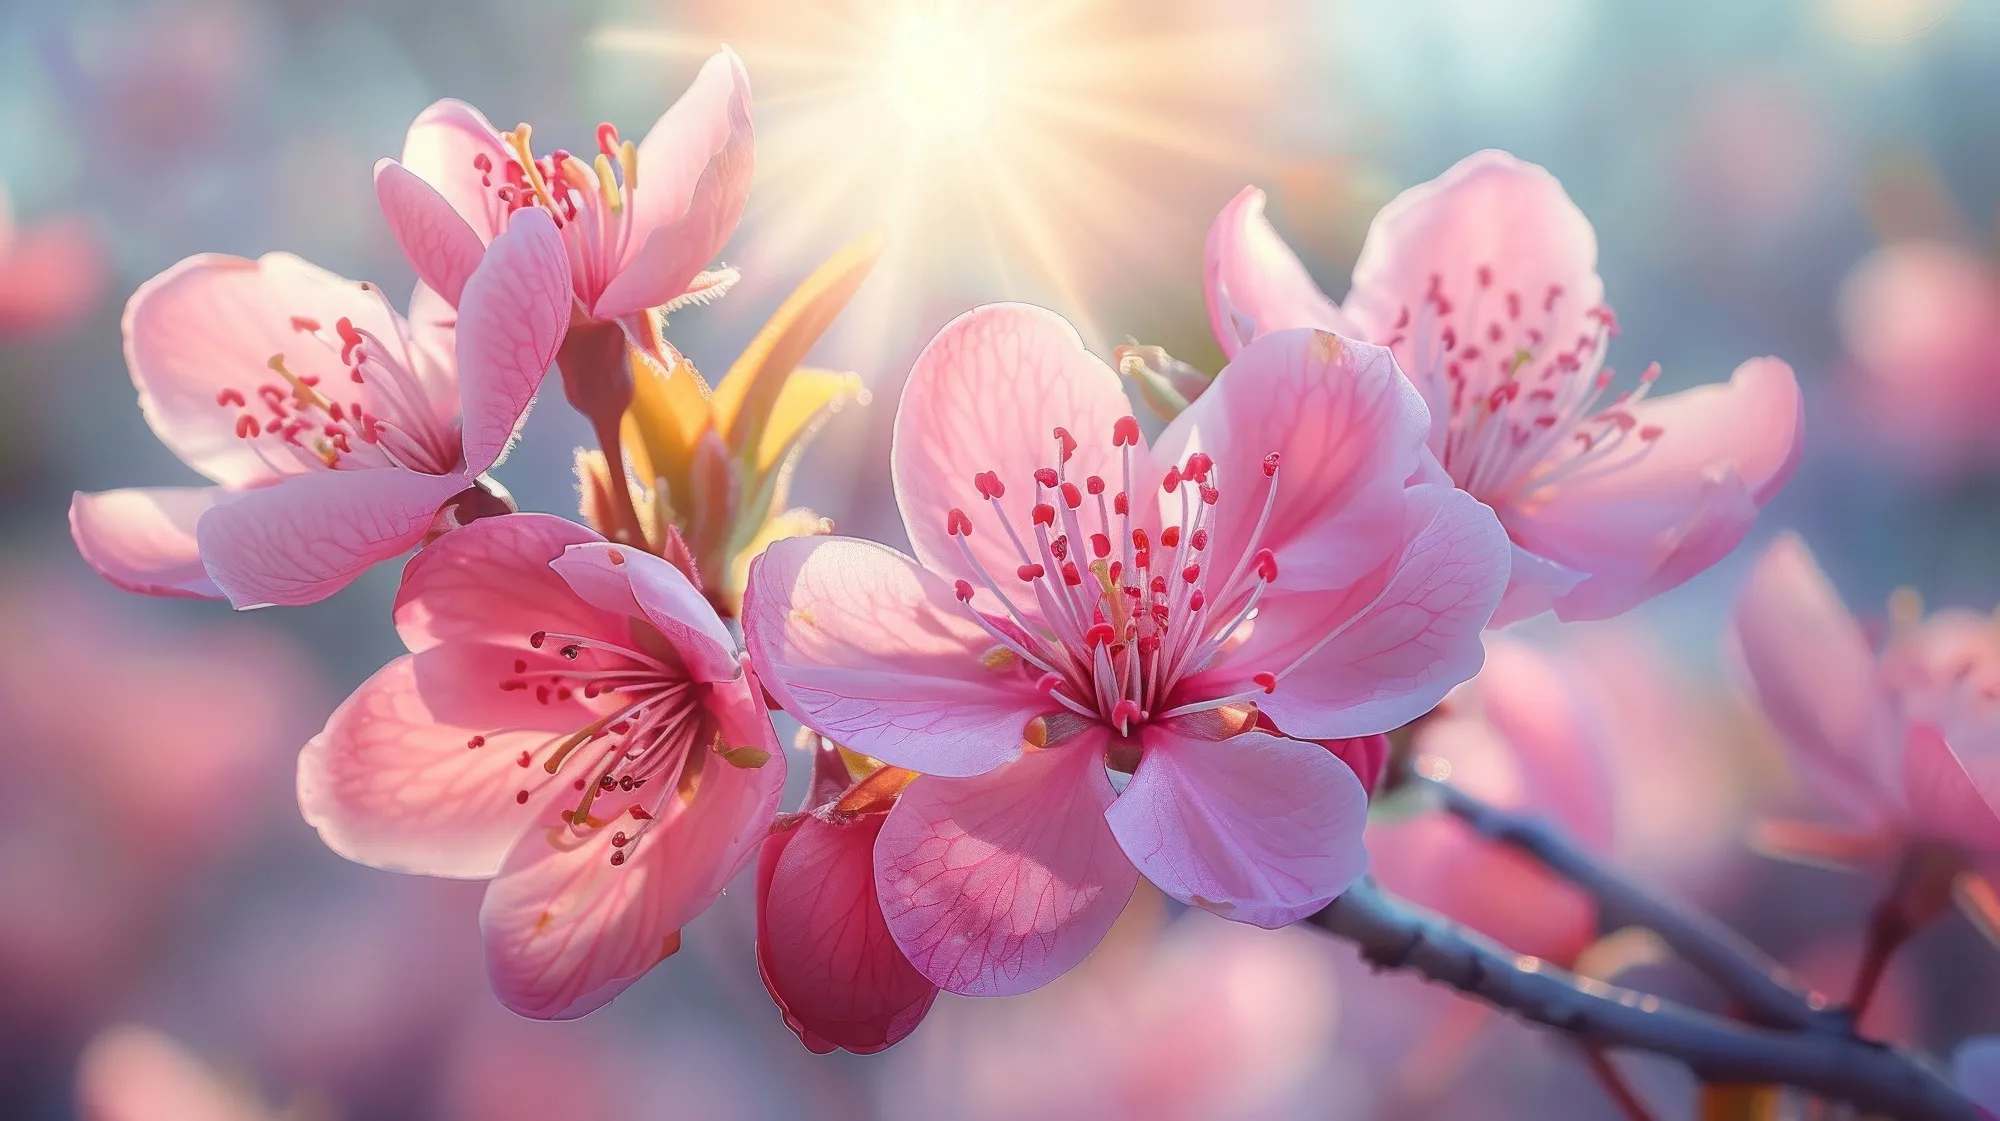 Que te mejores pronto: Mejores deseos de recuperación - Cerezos en flor